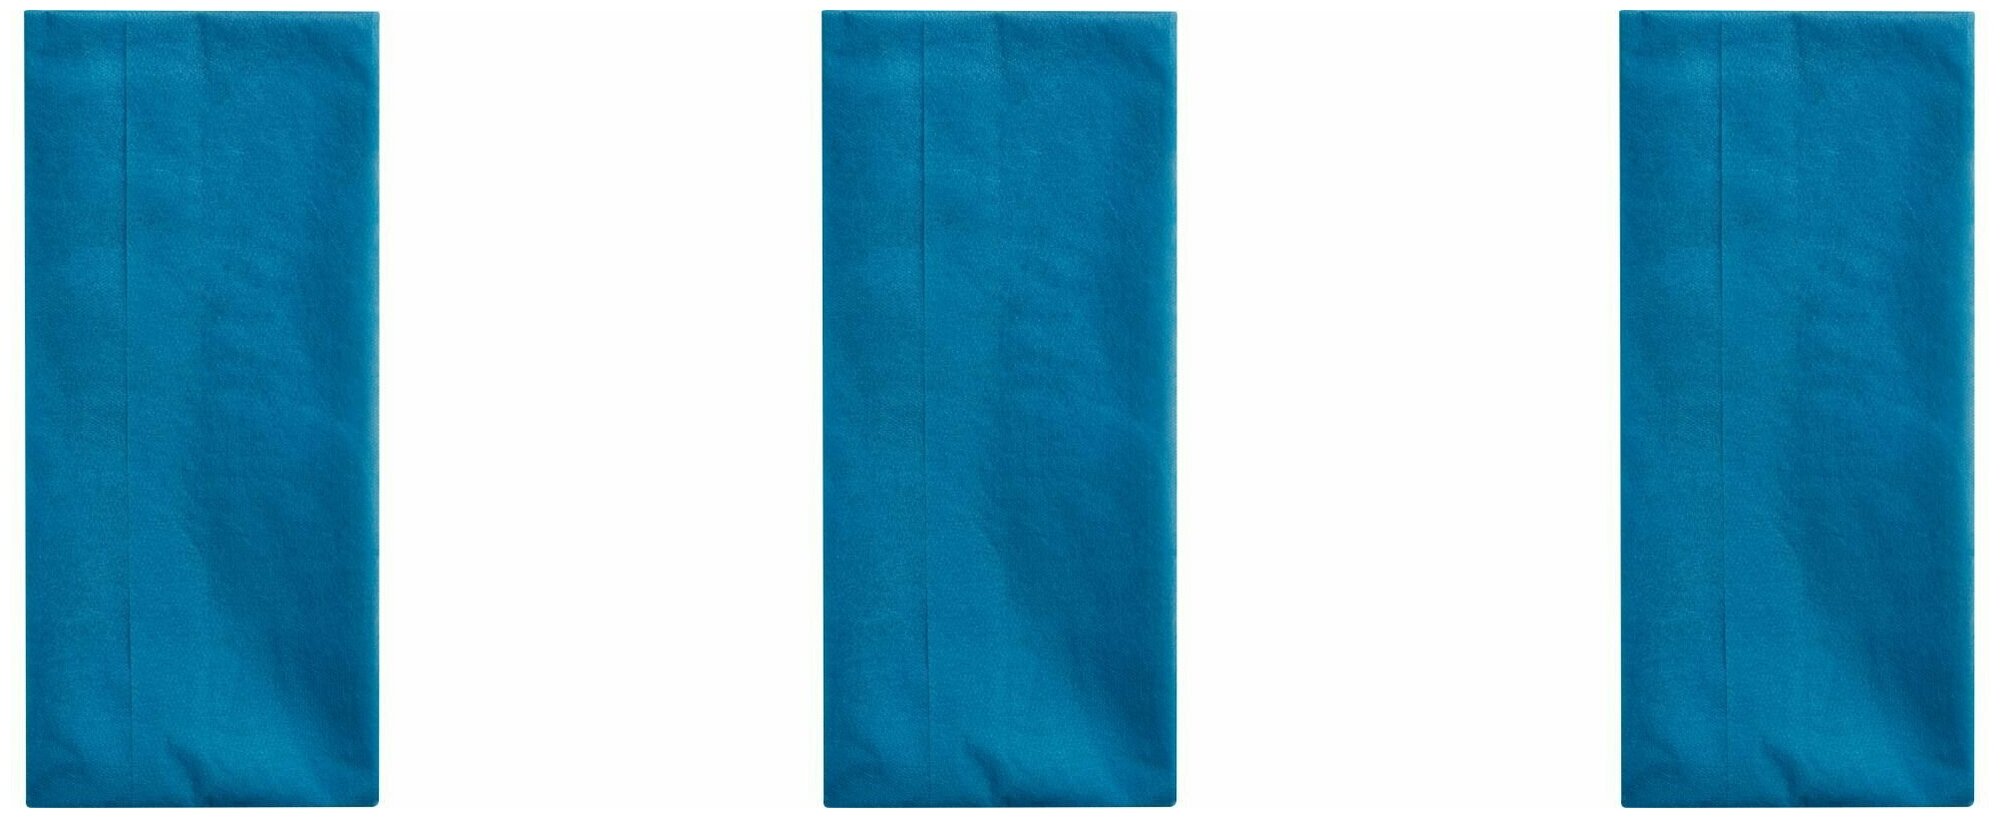 Luscan Скатерть одноразовая, 110х140 см, синяя, 3 шт